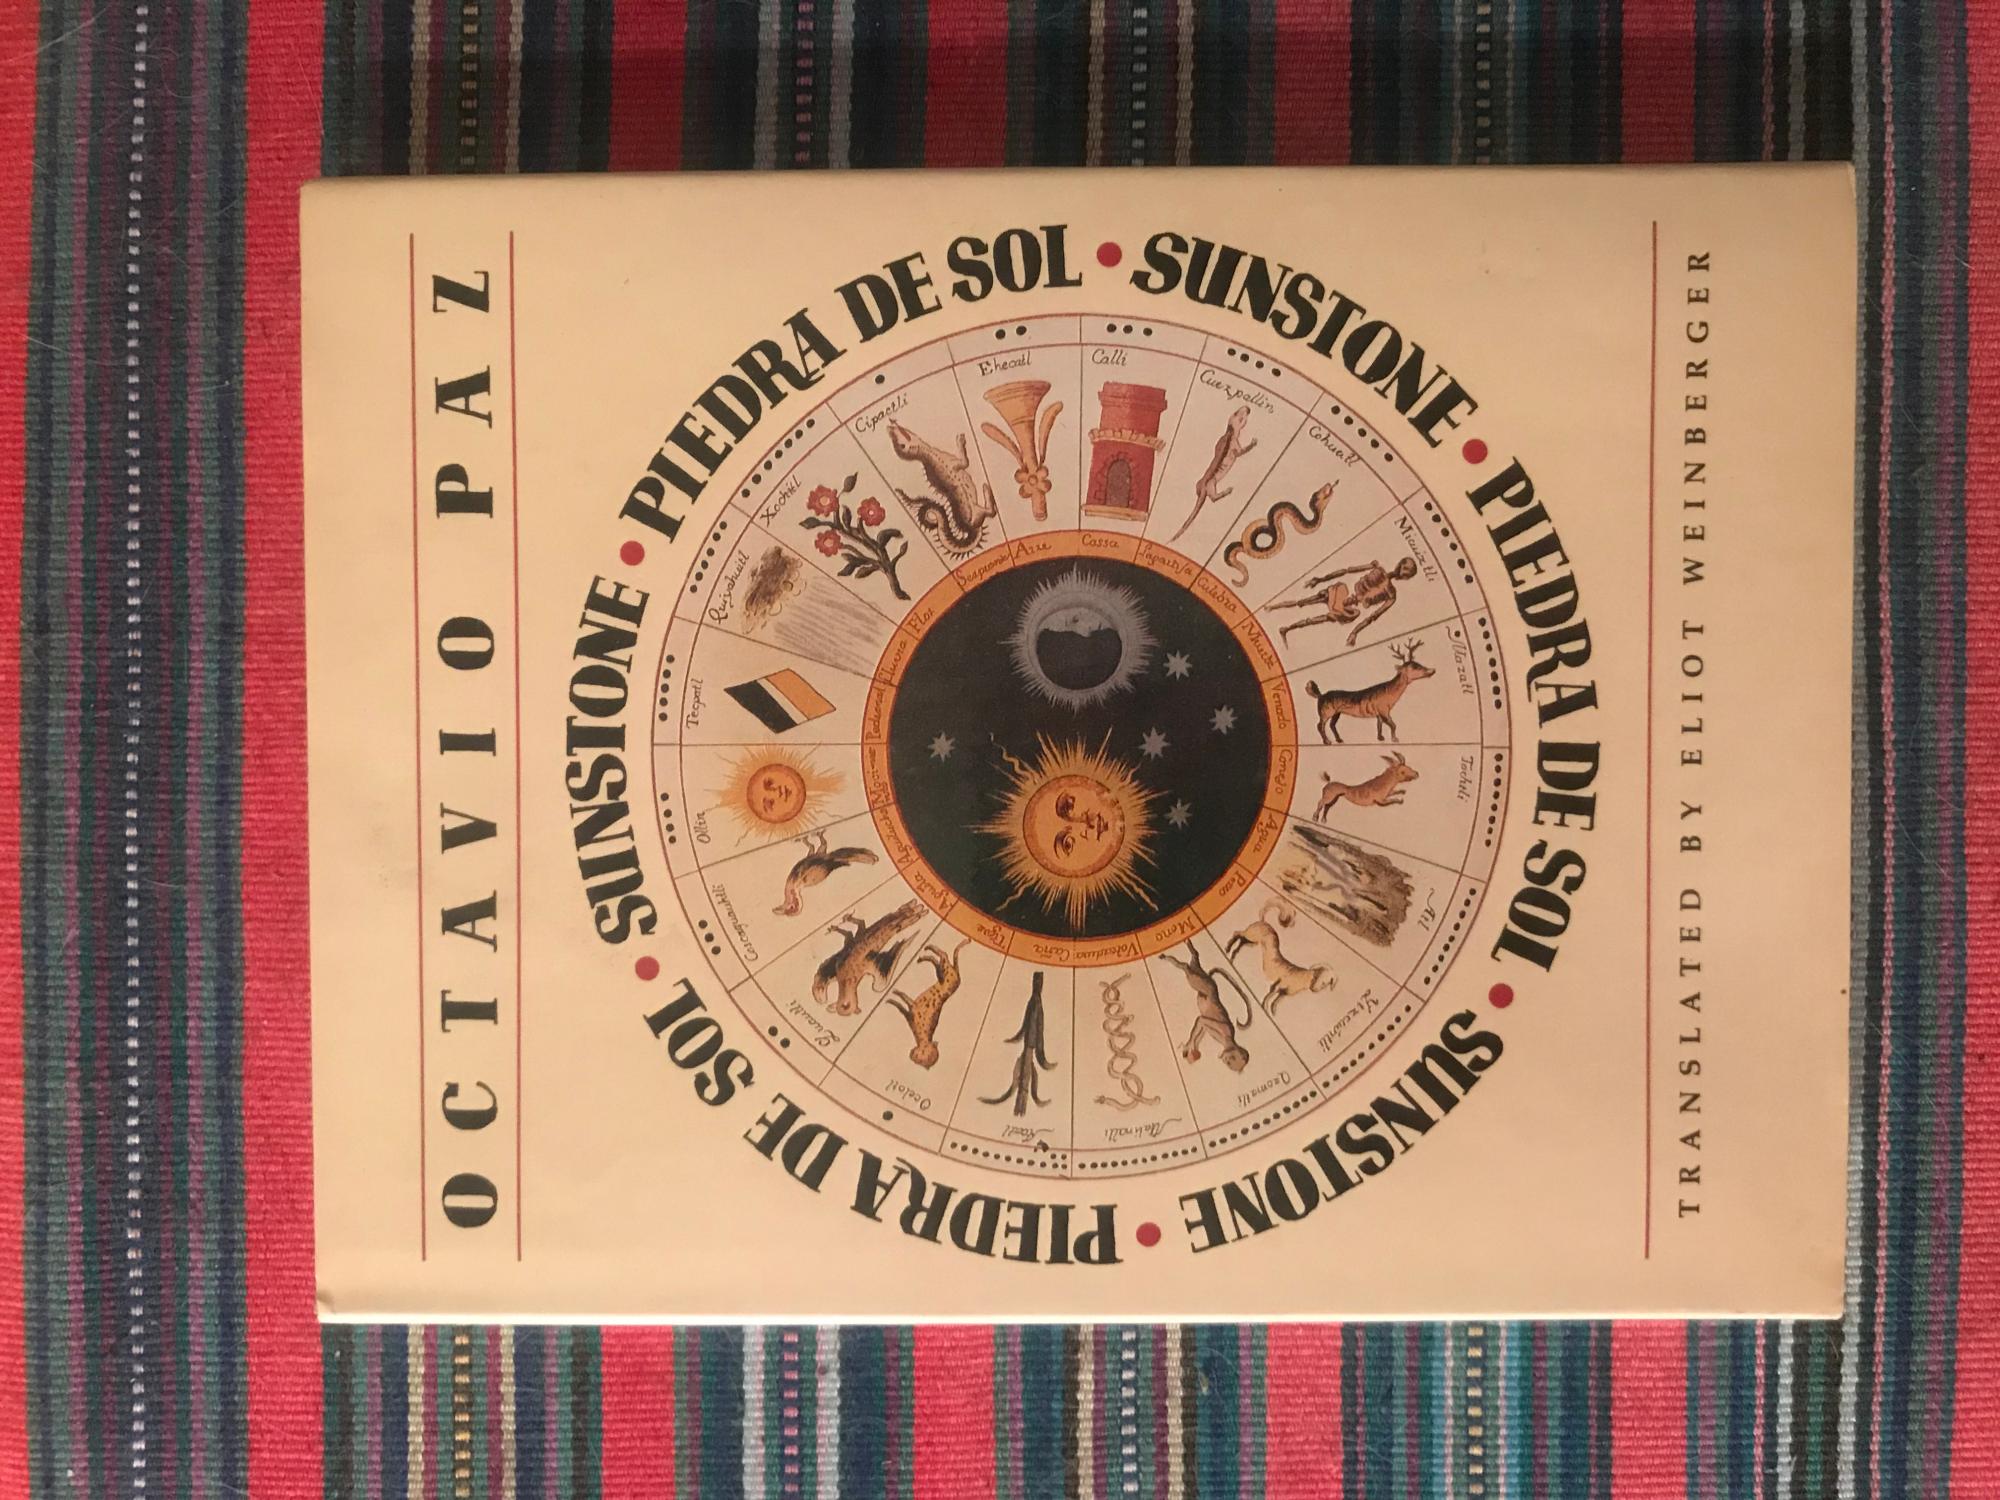 Sunstone/Piedra De Sol - Octavio Paz